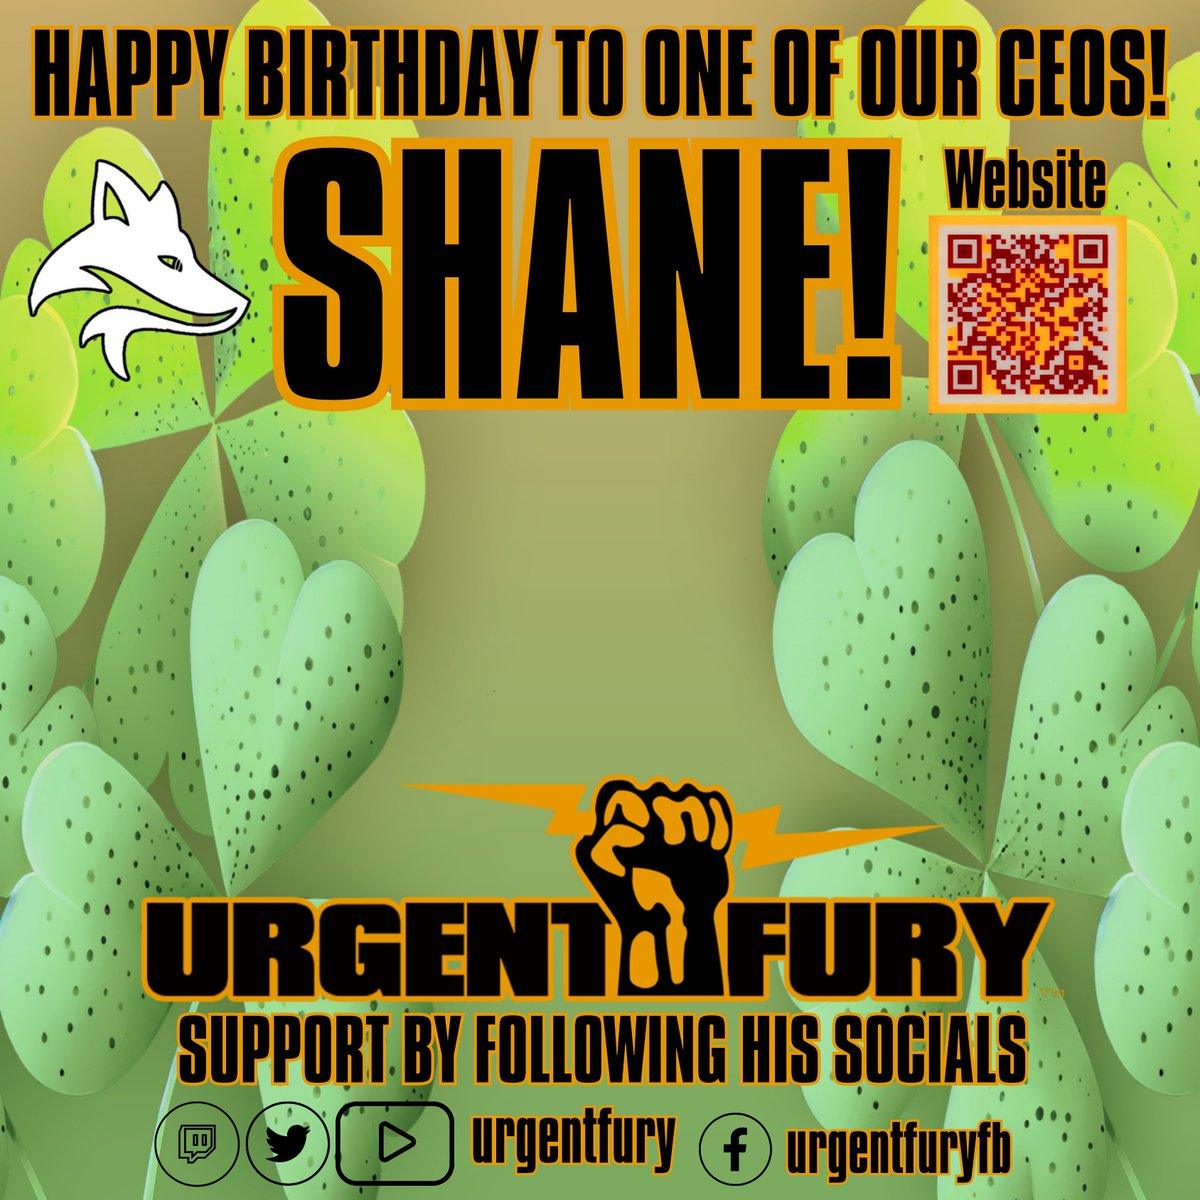 Happy birthday to @UrgentFury (One of our CEOs of Sky Fox Studios!) Support them by following their socials! 

urgentfury.com

#esports #GamingCommunity #birthday #gaming #esport